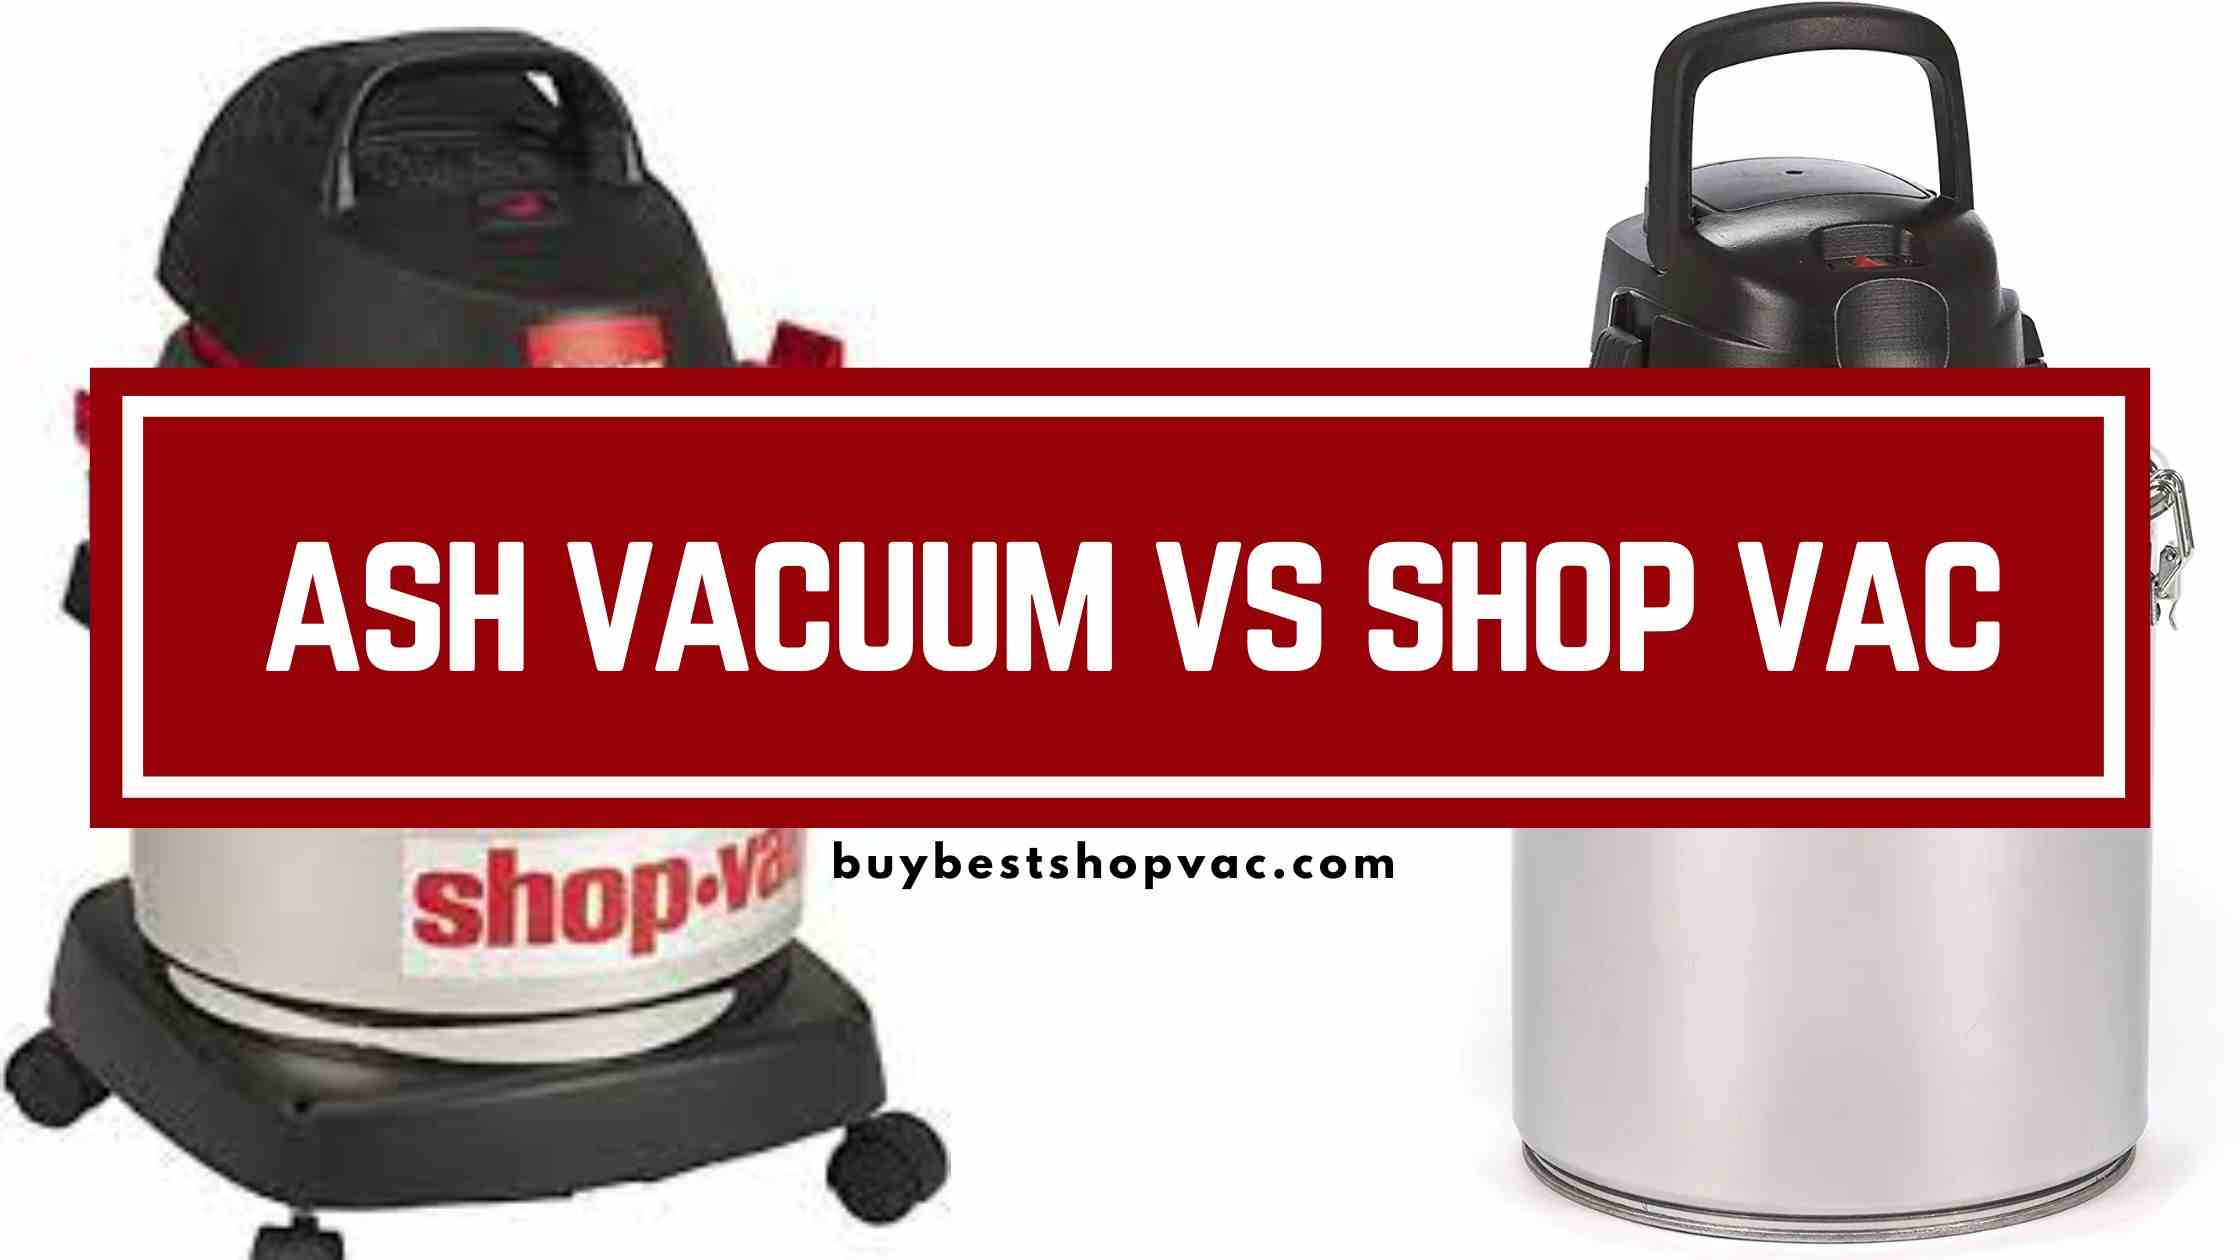 ash vacuum vs shop vac